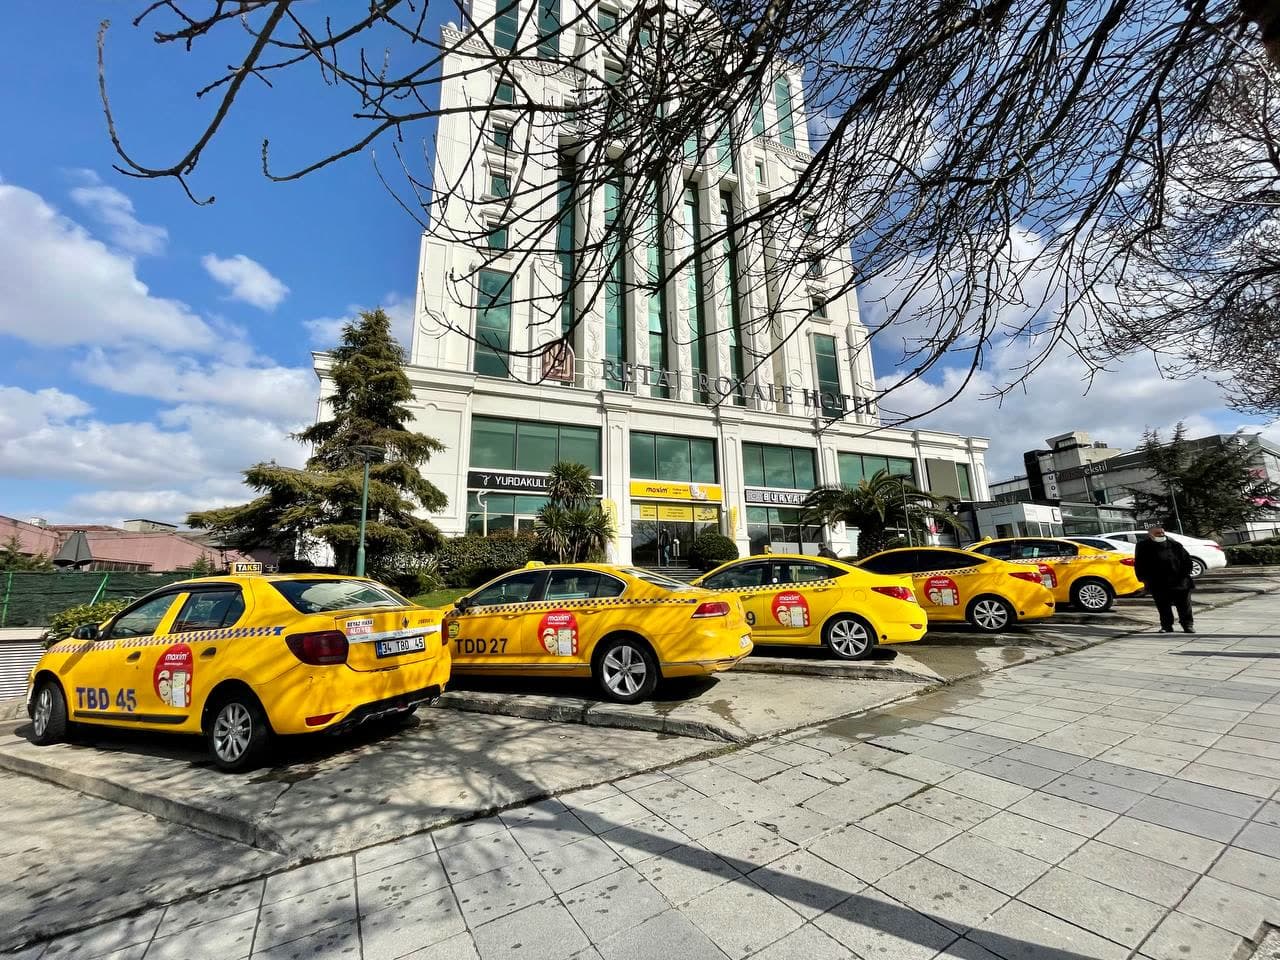 Maxim Uluslararası Kentsel Mobilite Hizmeti İstanbul’da çalışmaya başlamıştır